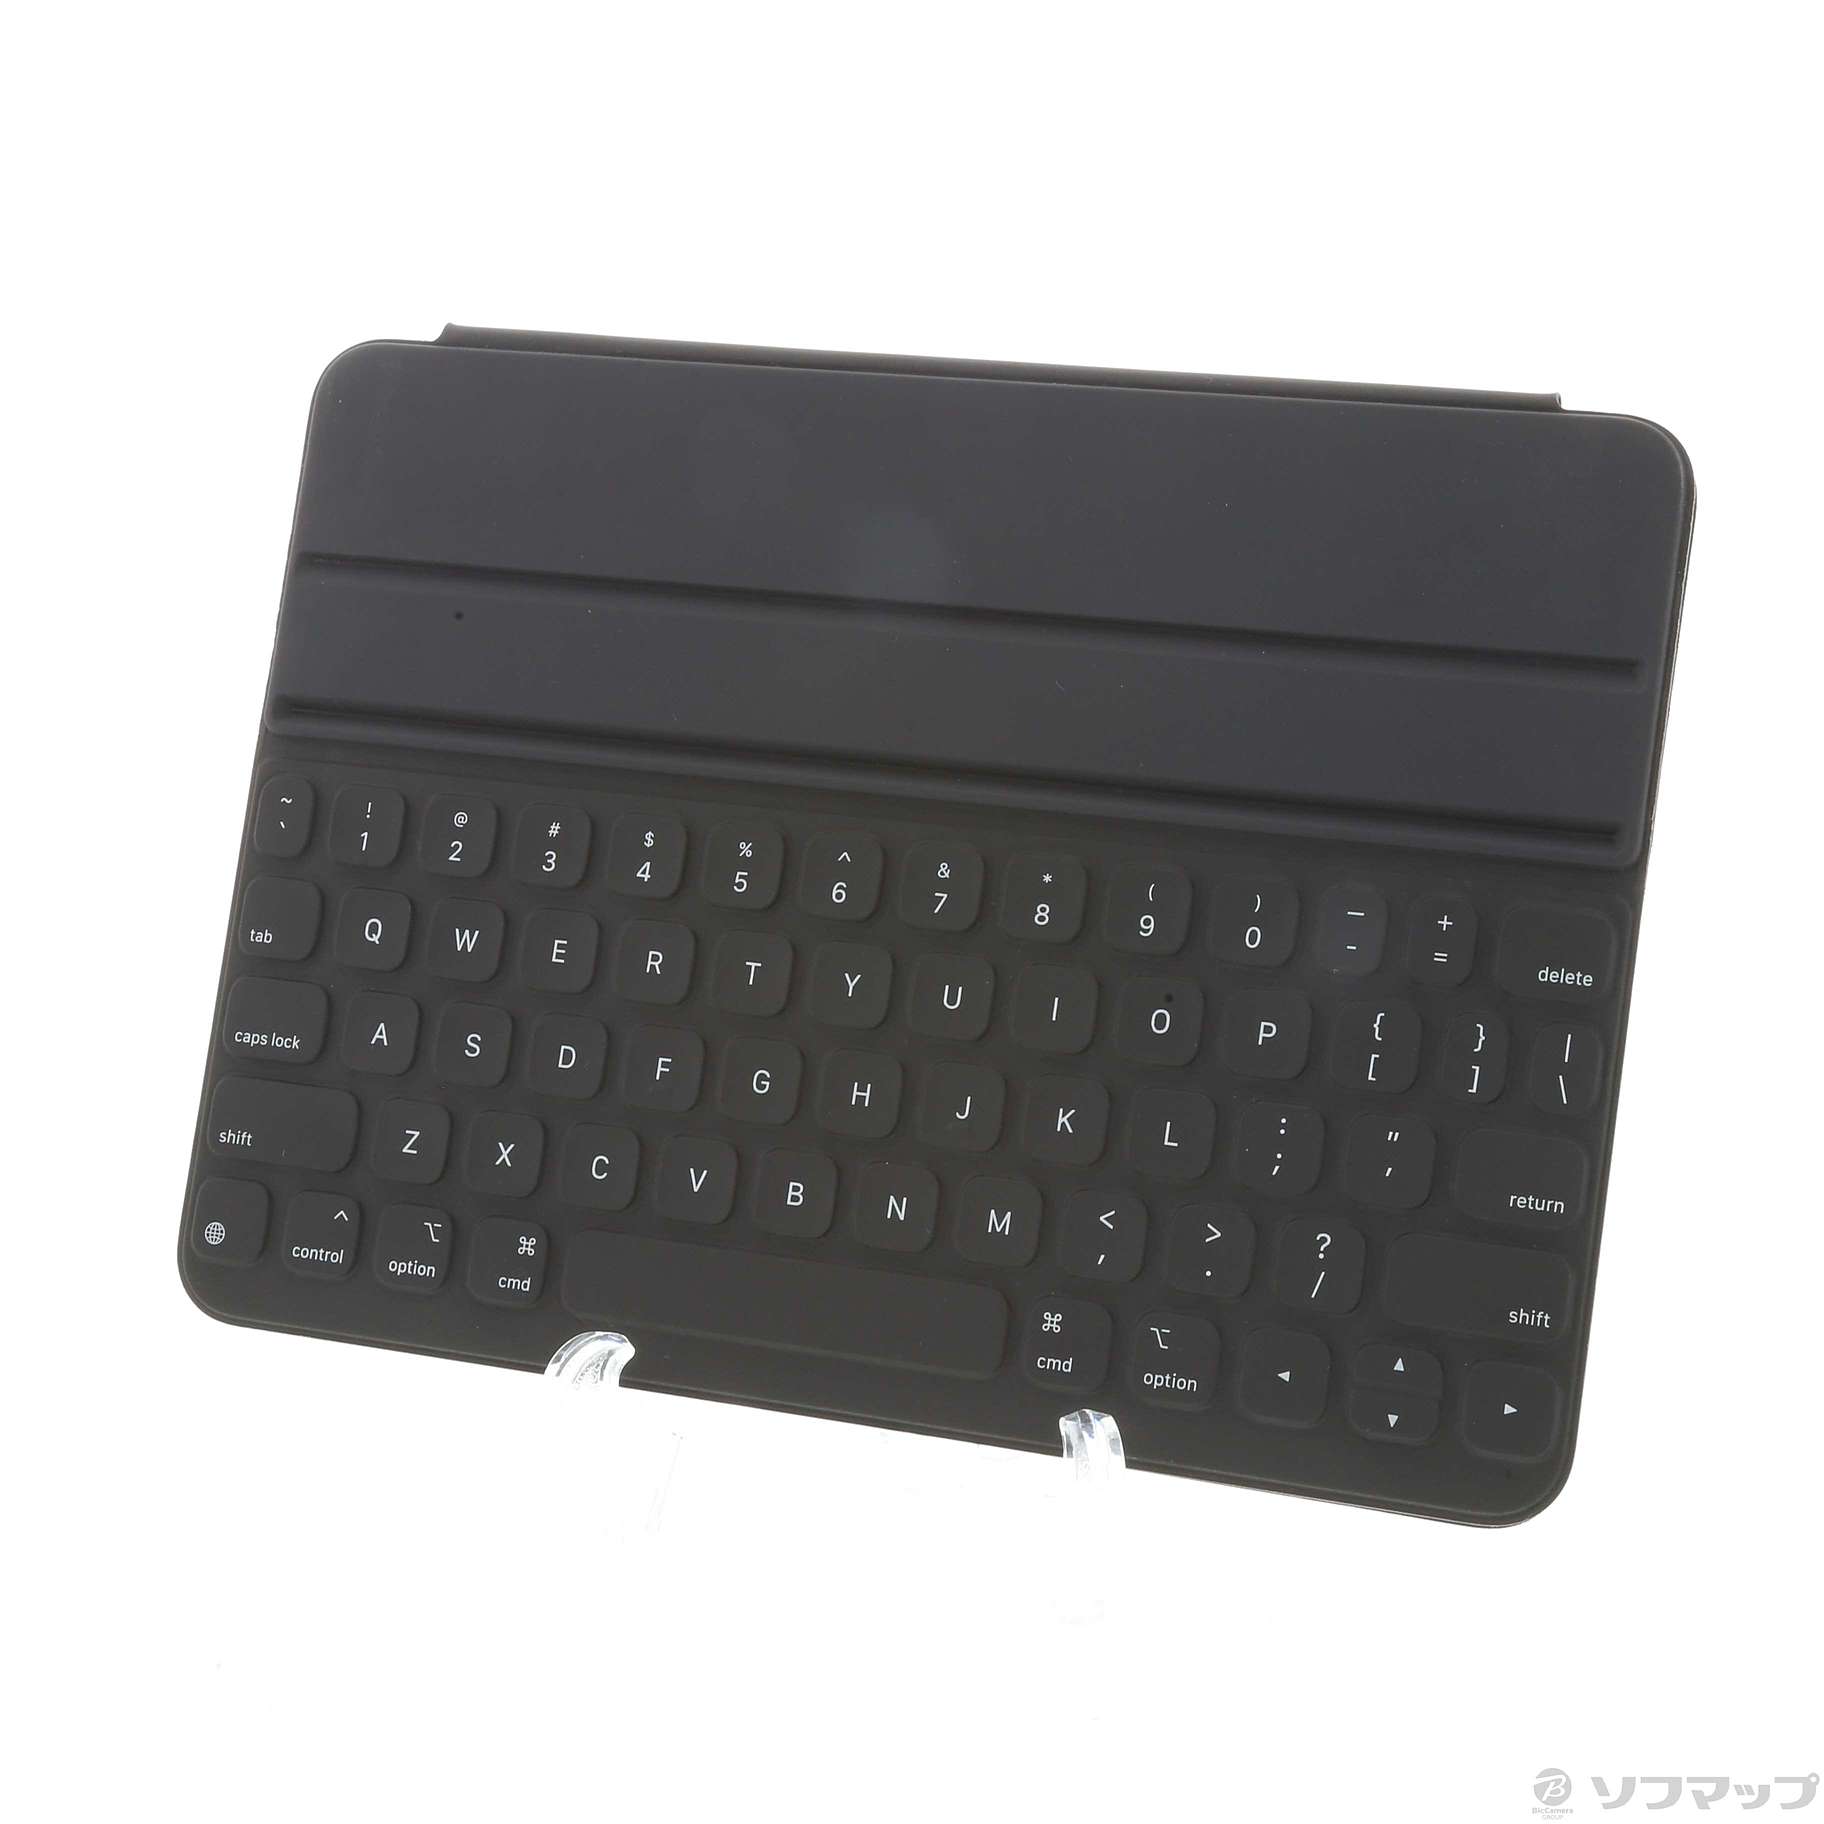 スマホアクセサリー新品 Apple iPad 11インチ Smart Keyboard Folio